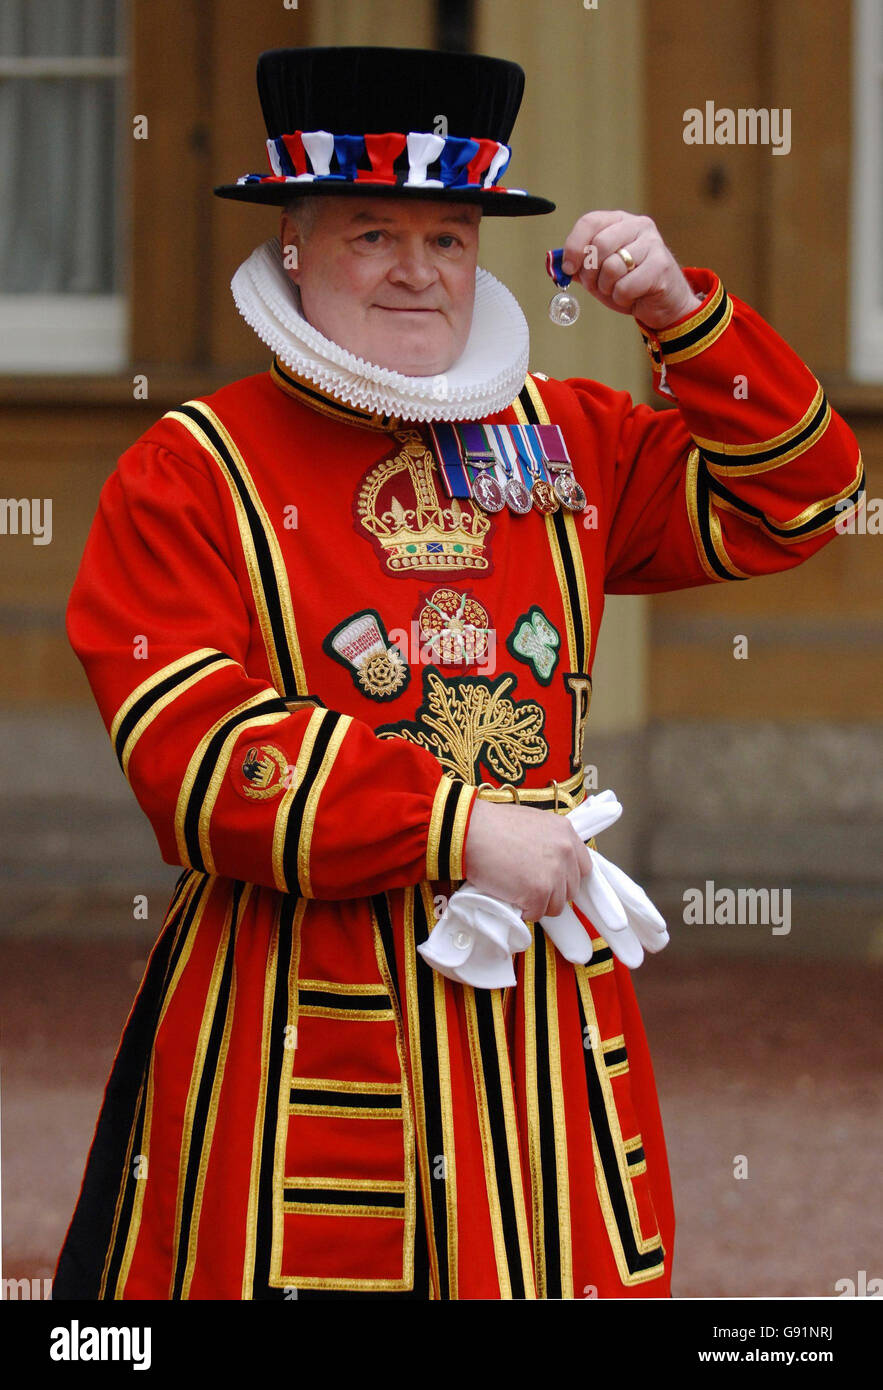 Ravenmaster Yeoman Warder Derrick Coyle, nachdem er mit der Royal Victorian Medal (Silber) während einer Investiturzeremonie im Buckingham Palace, in London, Donnerstag, 8. Dezember 2005, ausgezeichnet wurde. Der Ravenmaster des Tower of London erhielt einen königlichen Dank dafür, dass er dafür gesorgt hat, dass die vorausahnende Legende der historischen Stätte in Schach gehalten wurde. Ein königliches Dekret von Karl II. Verlangte, dass es immer sechs Raben am Turm geben sollte. Siehe PA Story ROYAL Investiture. DRÜCKEN SIE VERBANDSFOTO. Bildnachweis sollte lauten: Fiona Hanson/PA Stockfoto